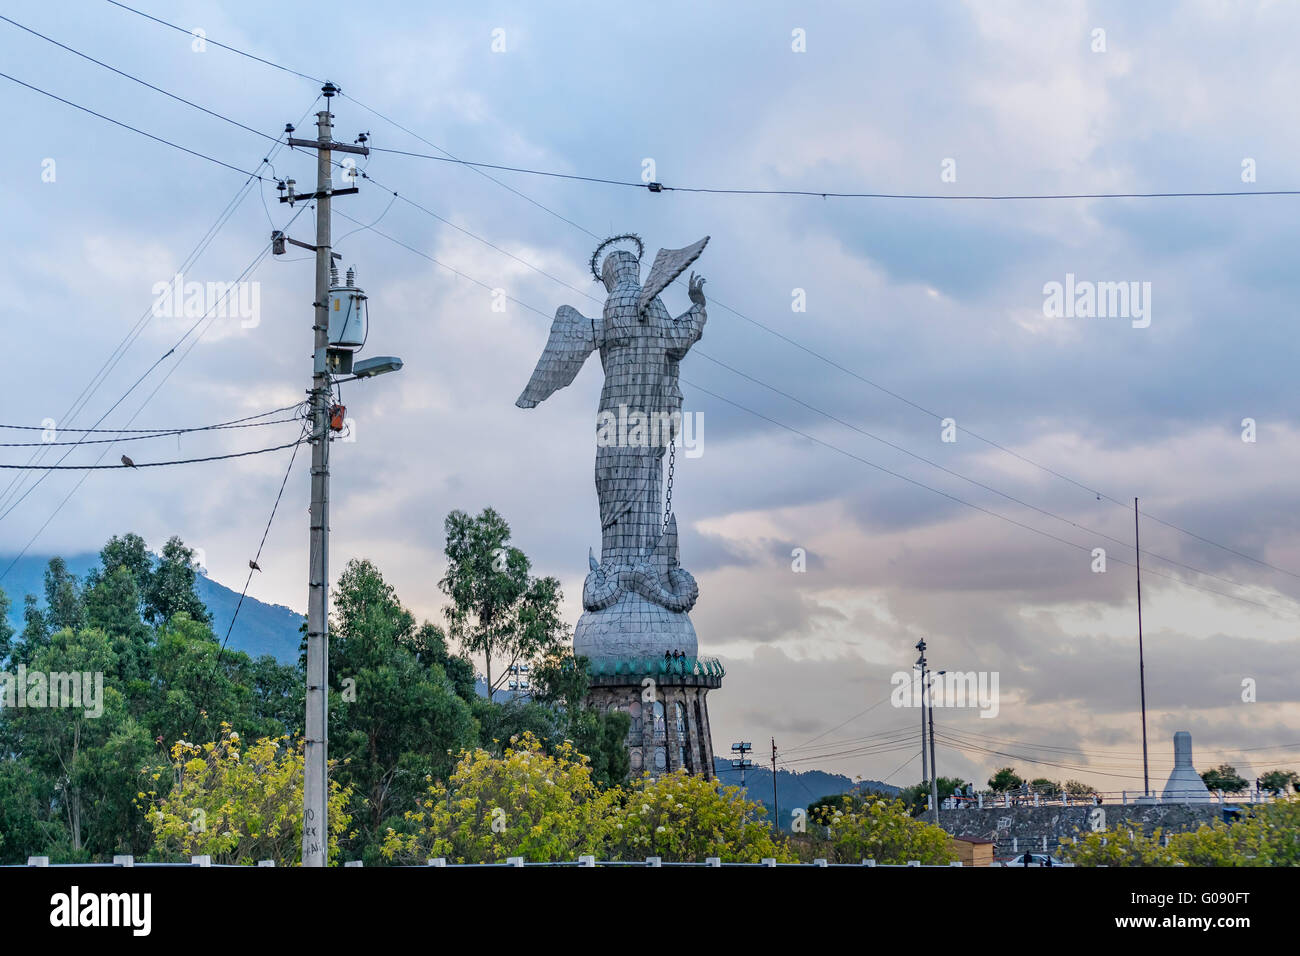 Panecillo vergine o vergine di Quito che è un monumento in onore di Maria Vergine Immacolata situato in cima ad una collina in Esci Foto Stock